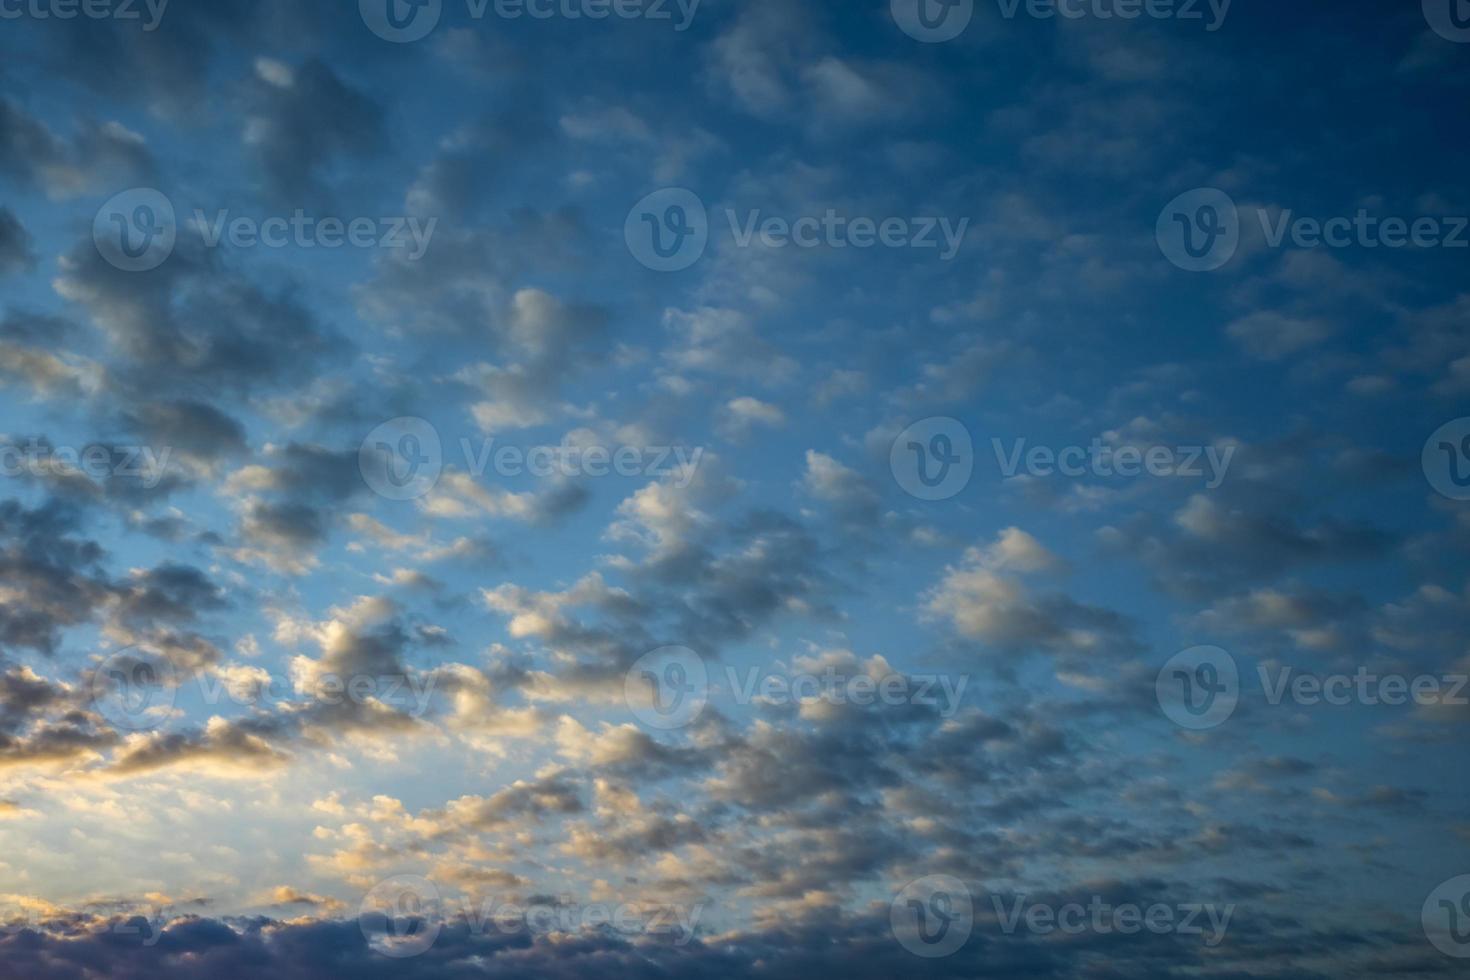 mörkblå himmel bakgrund med små stratus cirrus randiga moln. klarningskväll och bra blåsigt väder foto